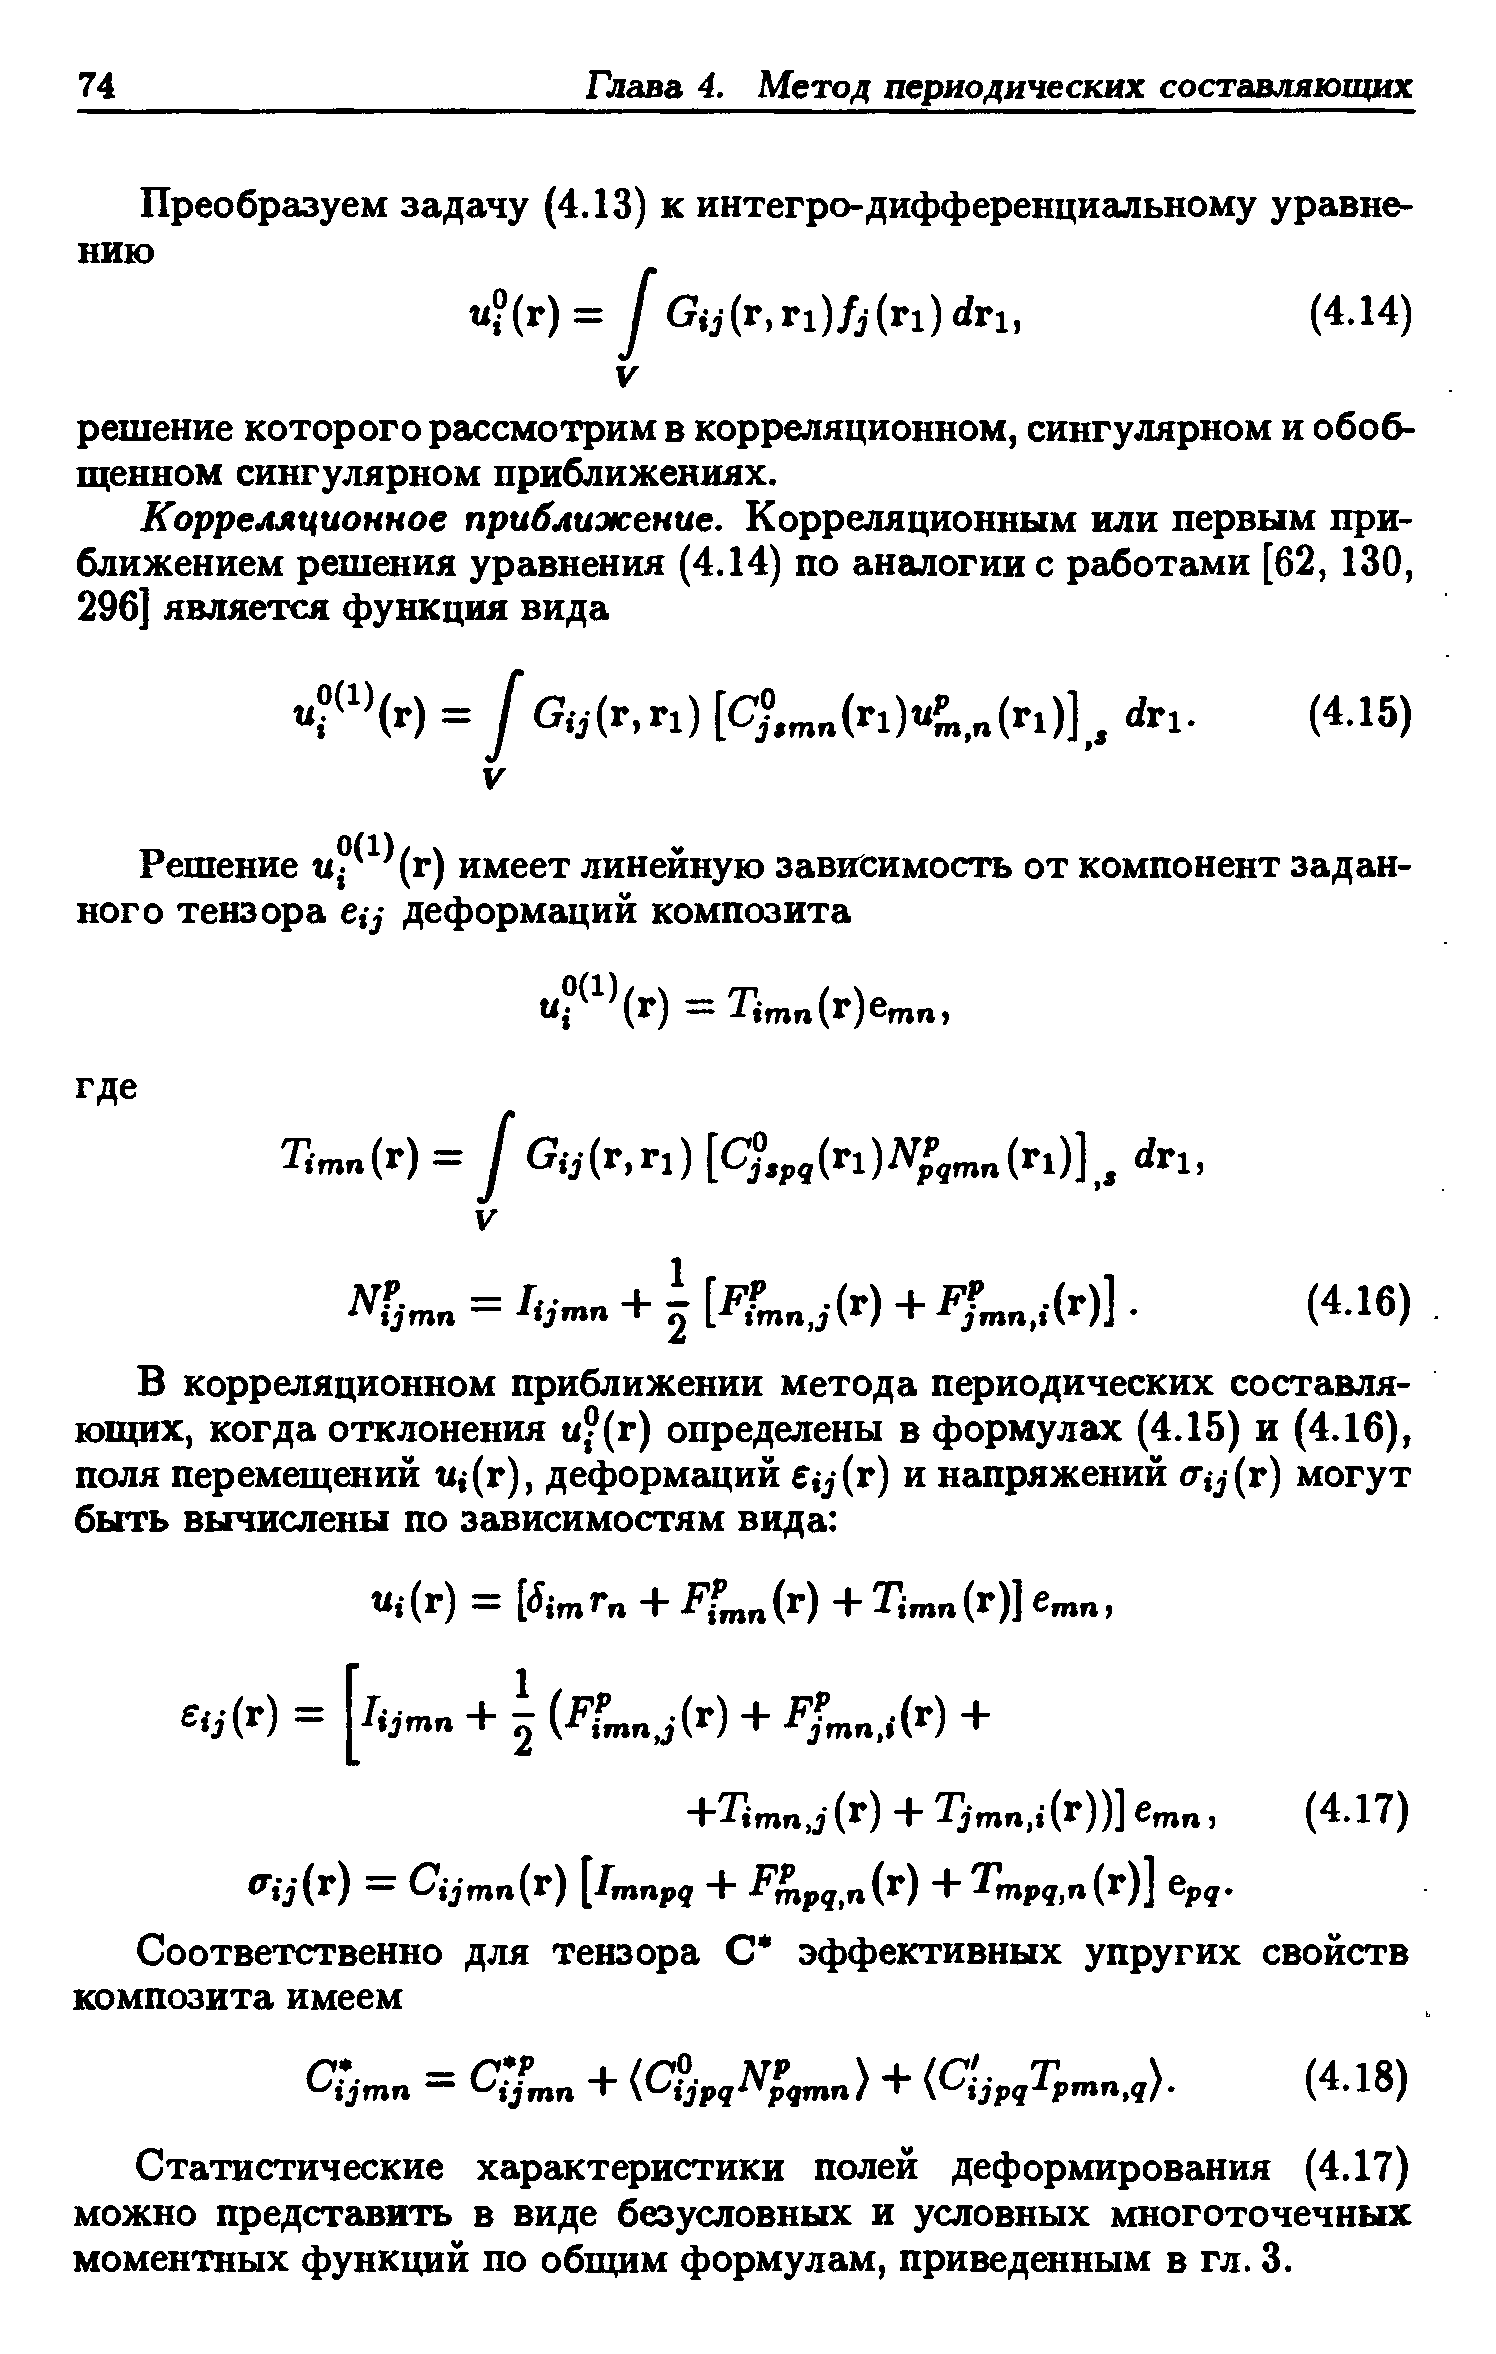 Статистические характеристики полей деформирования (4.17) можно представить в виде безусловных и условных многоточечных моментных функций по общим формулам, приведенным в гл. 3.
